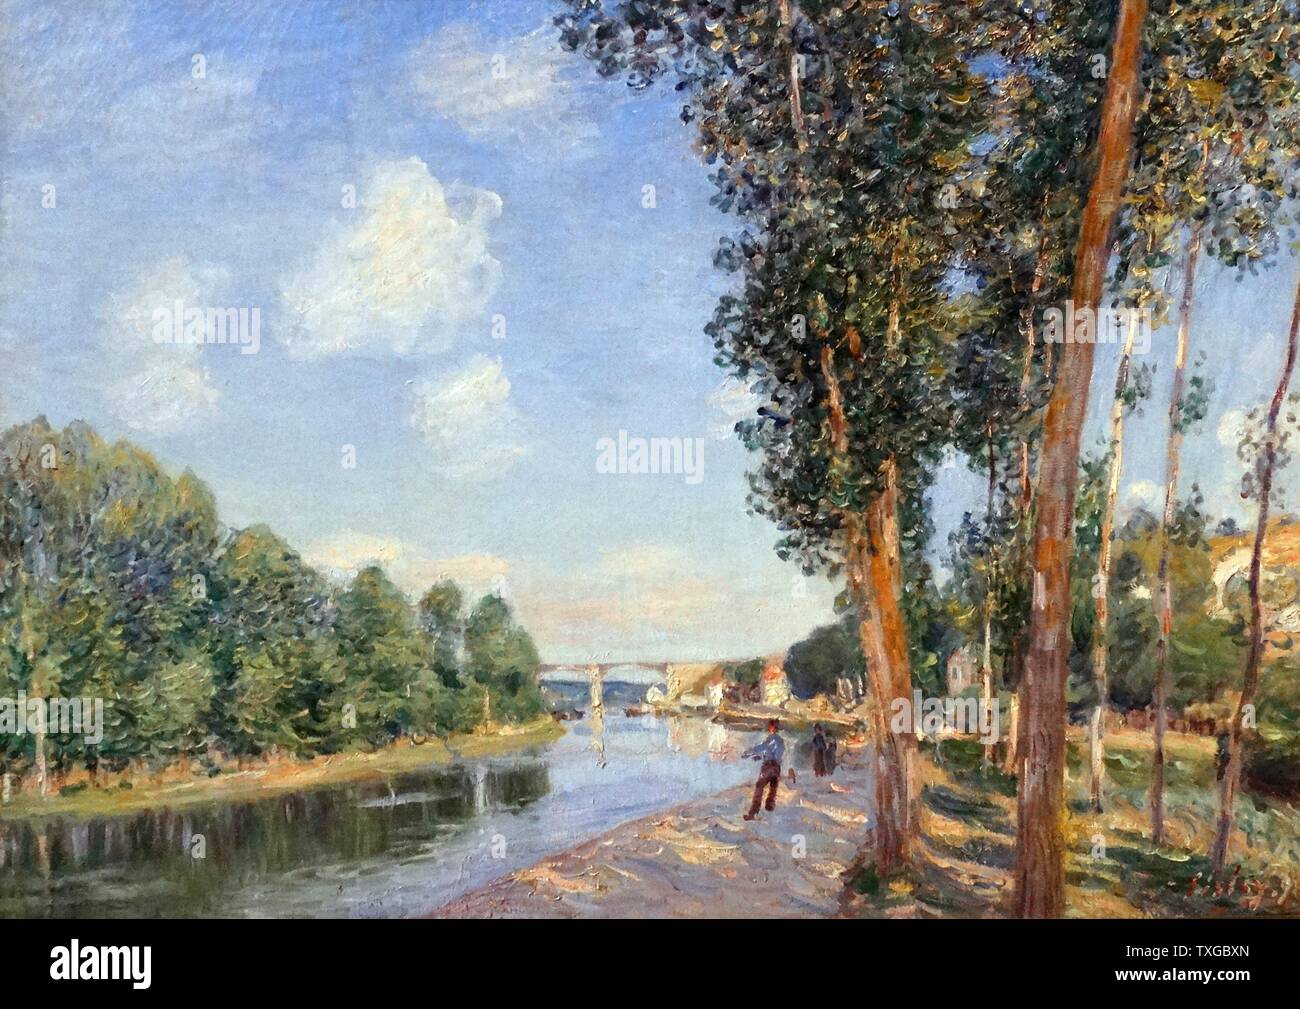 In Saint-Mammès. June Sunshine von Alfred Sisley (1839-1899) französischer impressionistischer Landschaftsmaler. Datiert 1852 Stockfoto